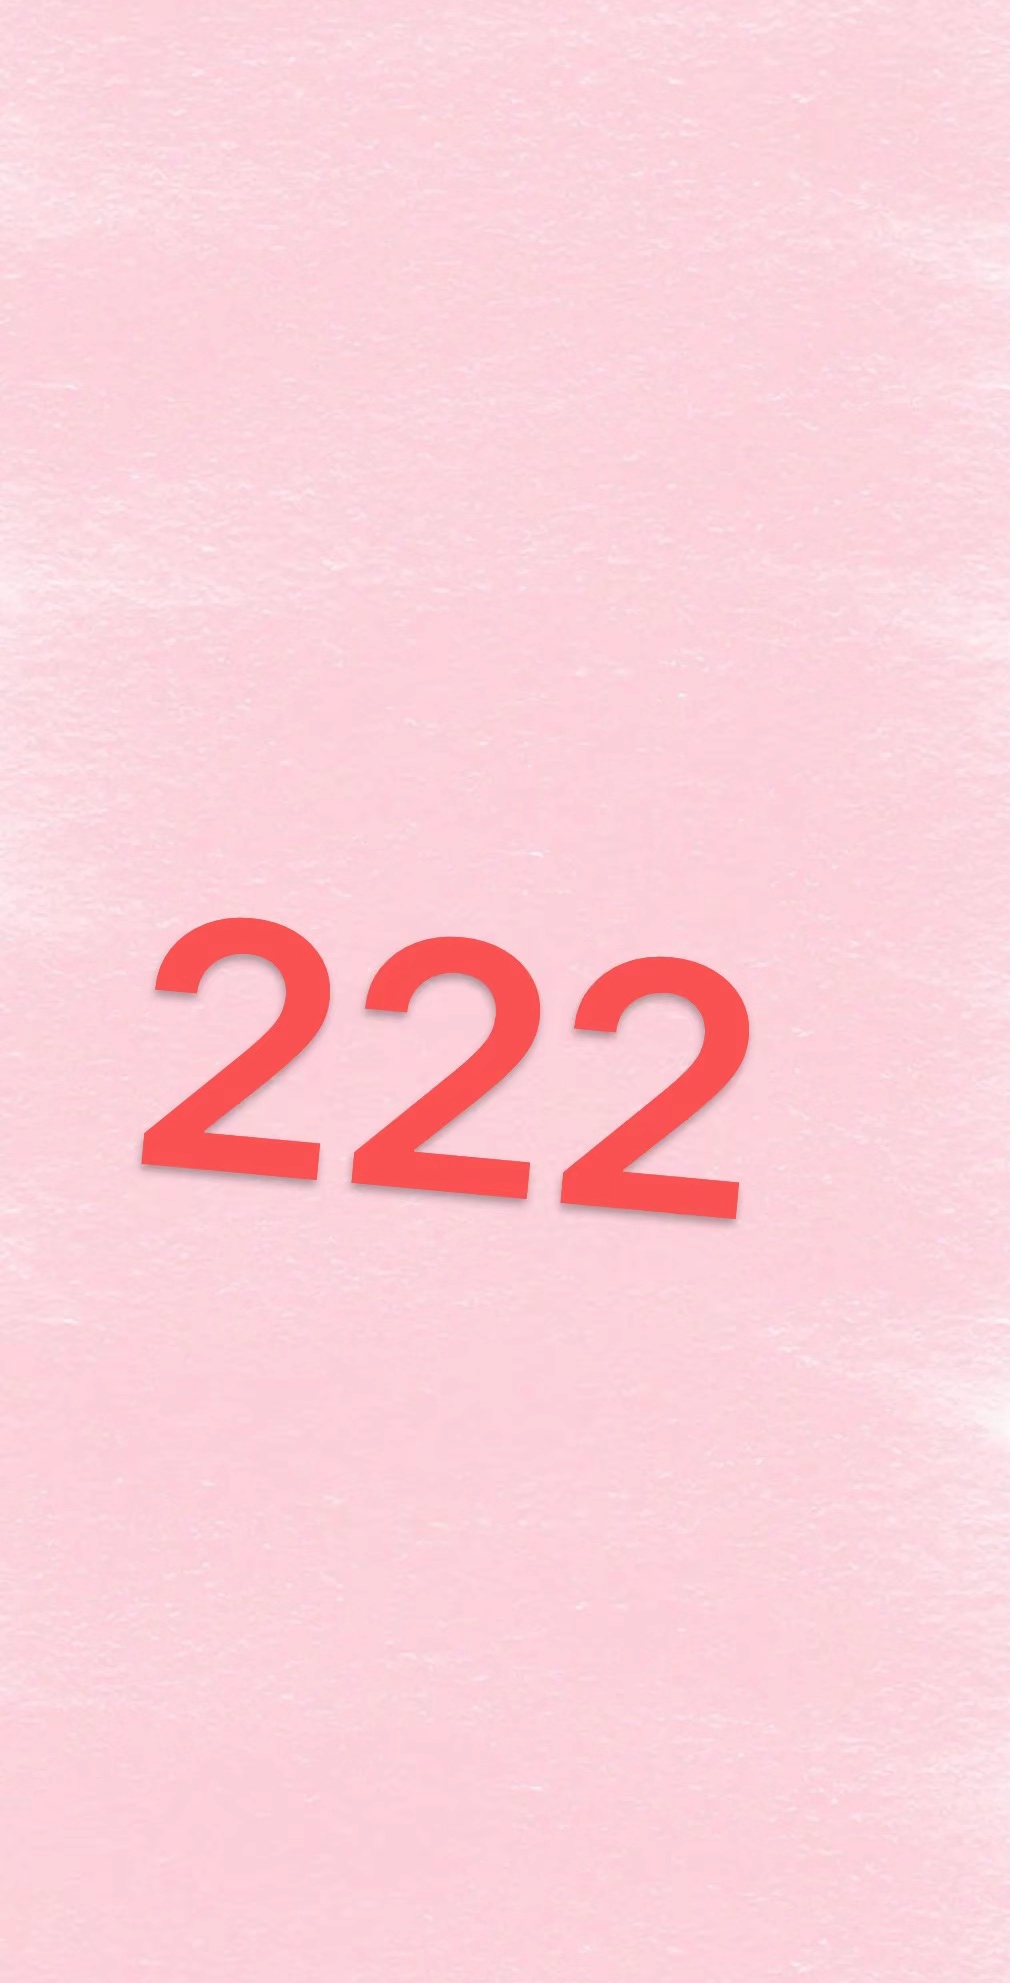  222-